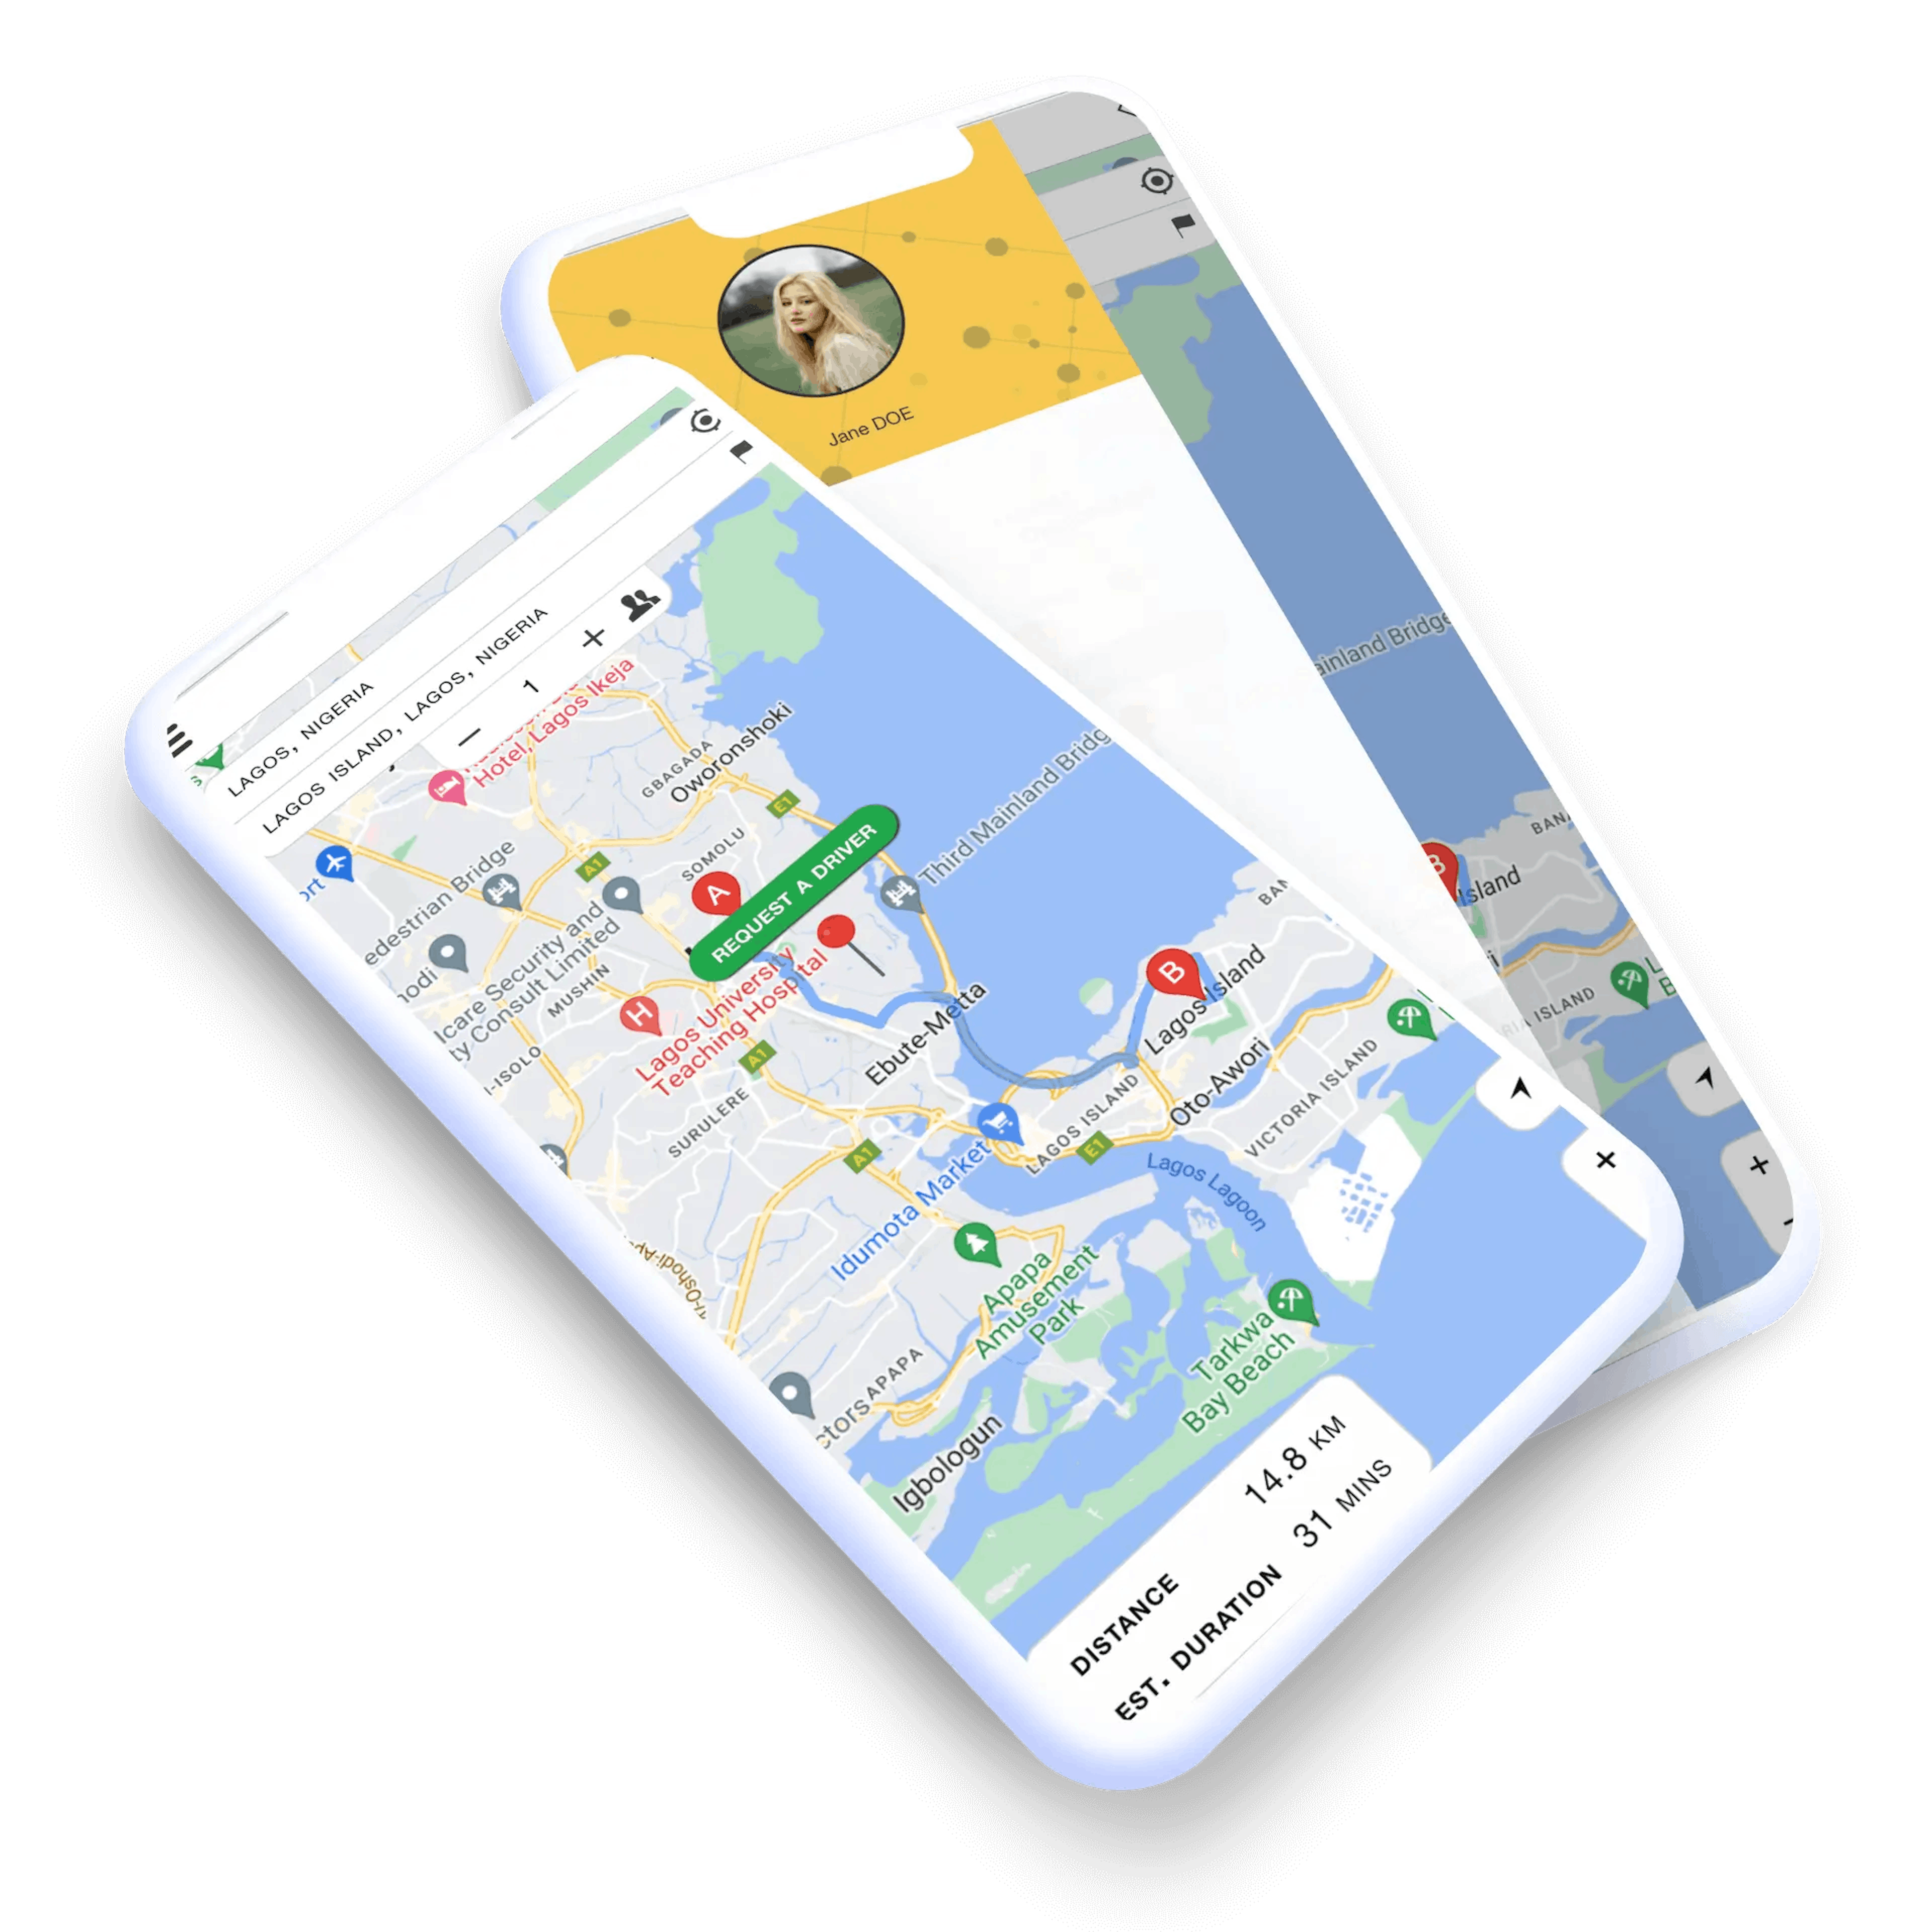 Erstellen Sie mit Swiftspeed eine Uber-ähnliche App für Taxifahrten ohne Programmierkenntnisse